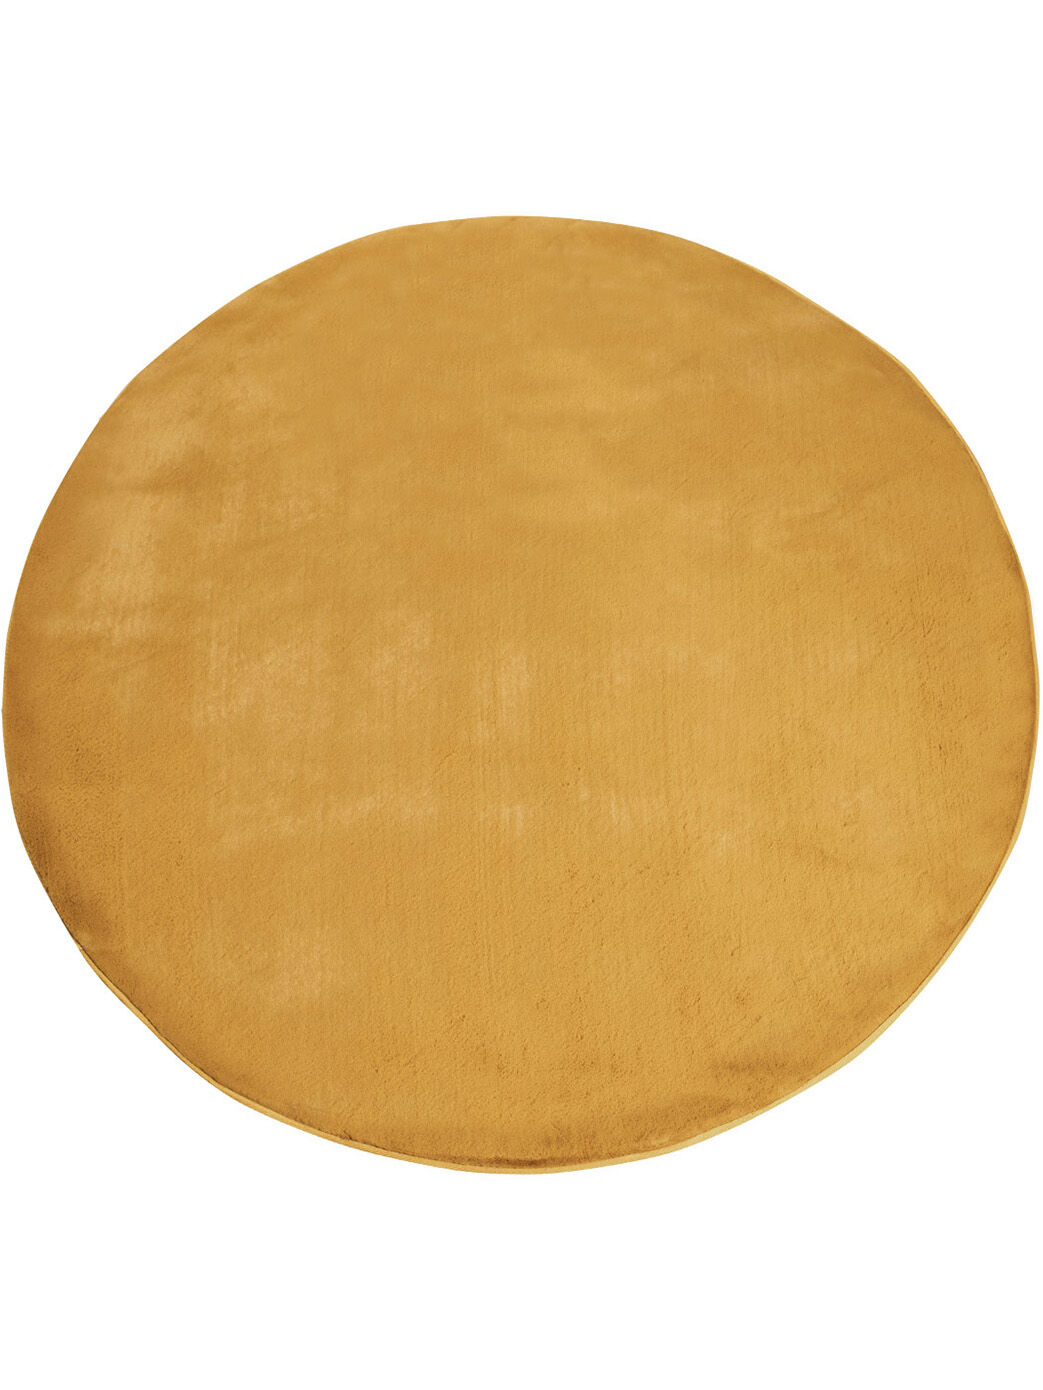 Flauschiger Teppich Mona Gold Rund 160x160 1